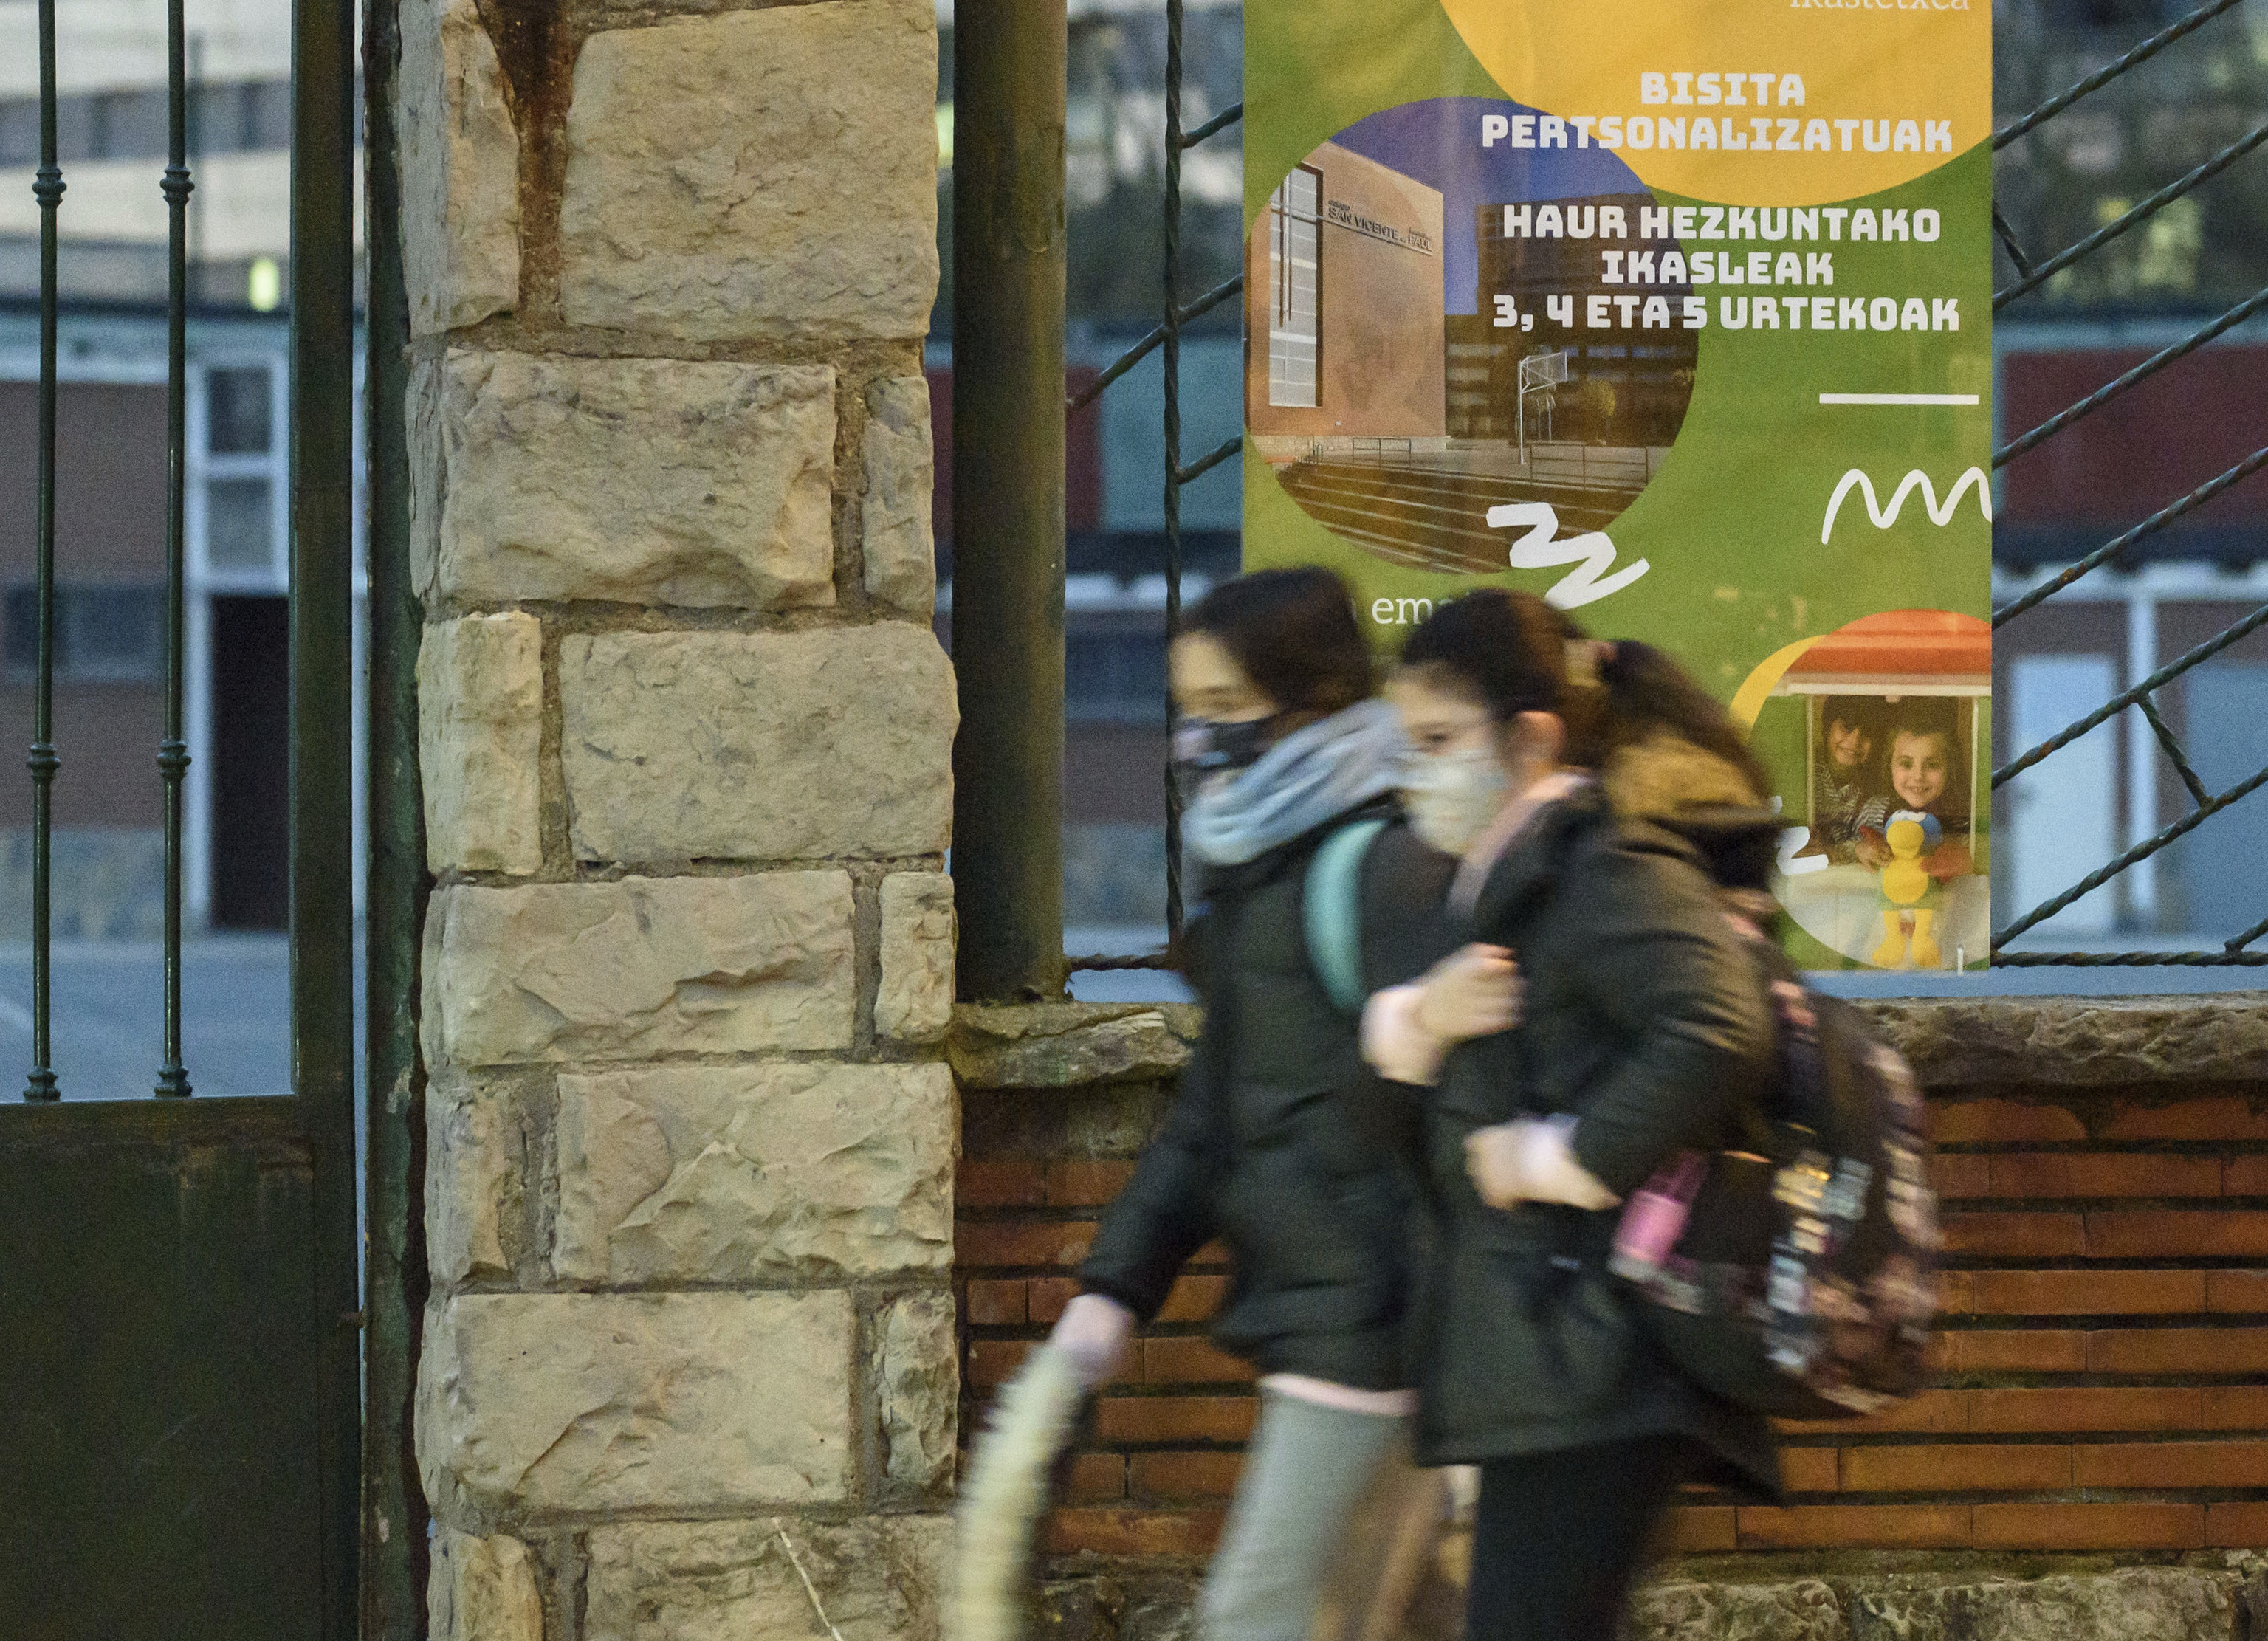 Dos escolares caminan junto a un cartel en euskera expuesto en un centro educativo de Bizkaia.